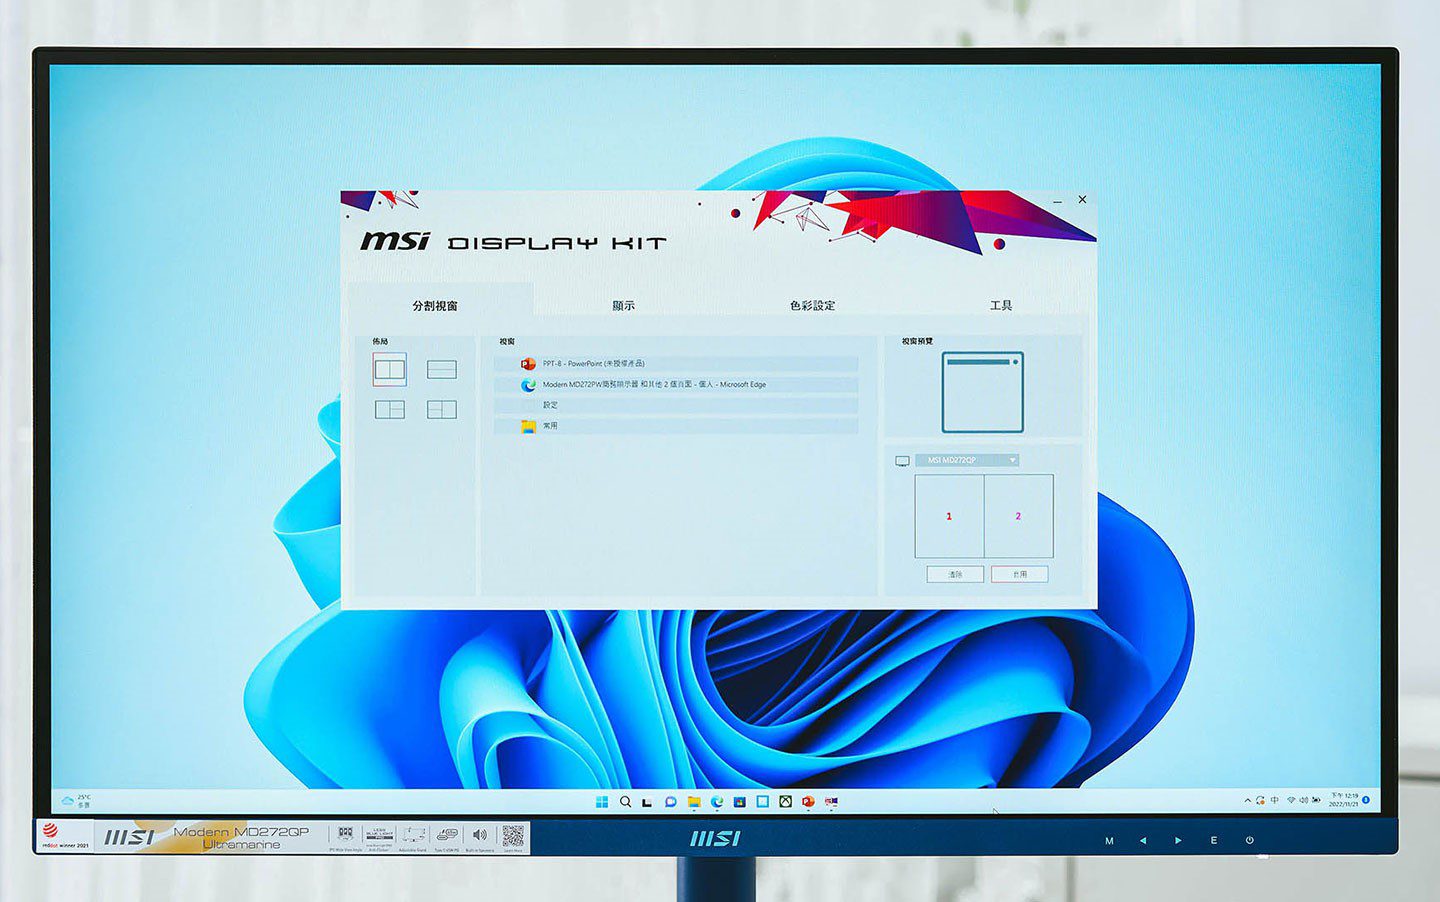 可 支援 MSI Display Kit 工具 帶來 更多 功能。